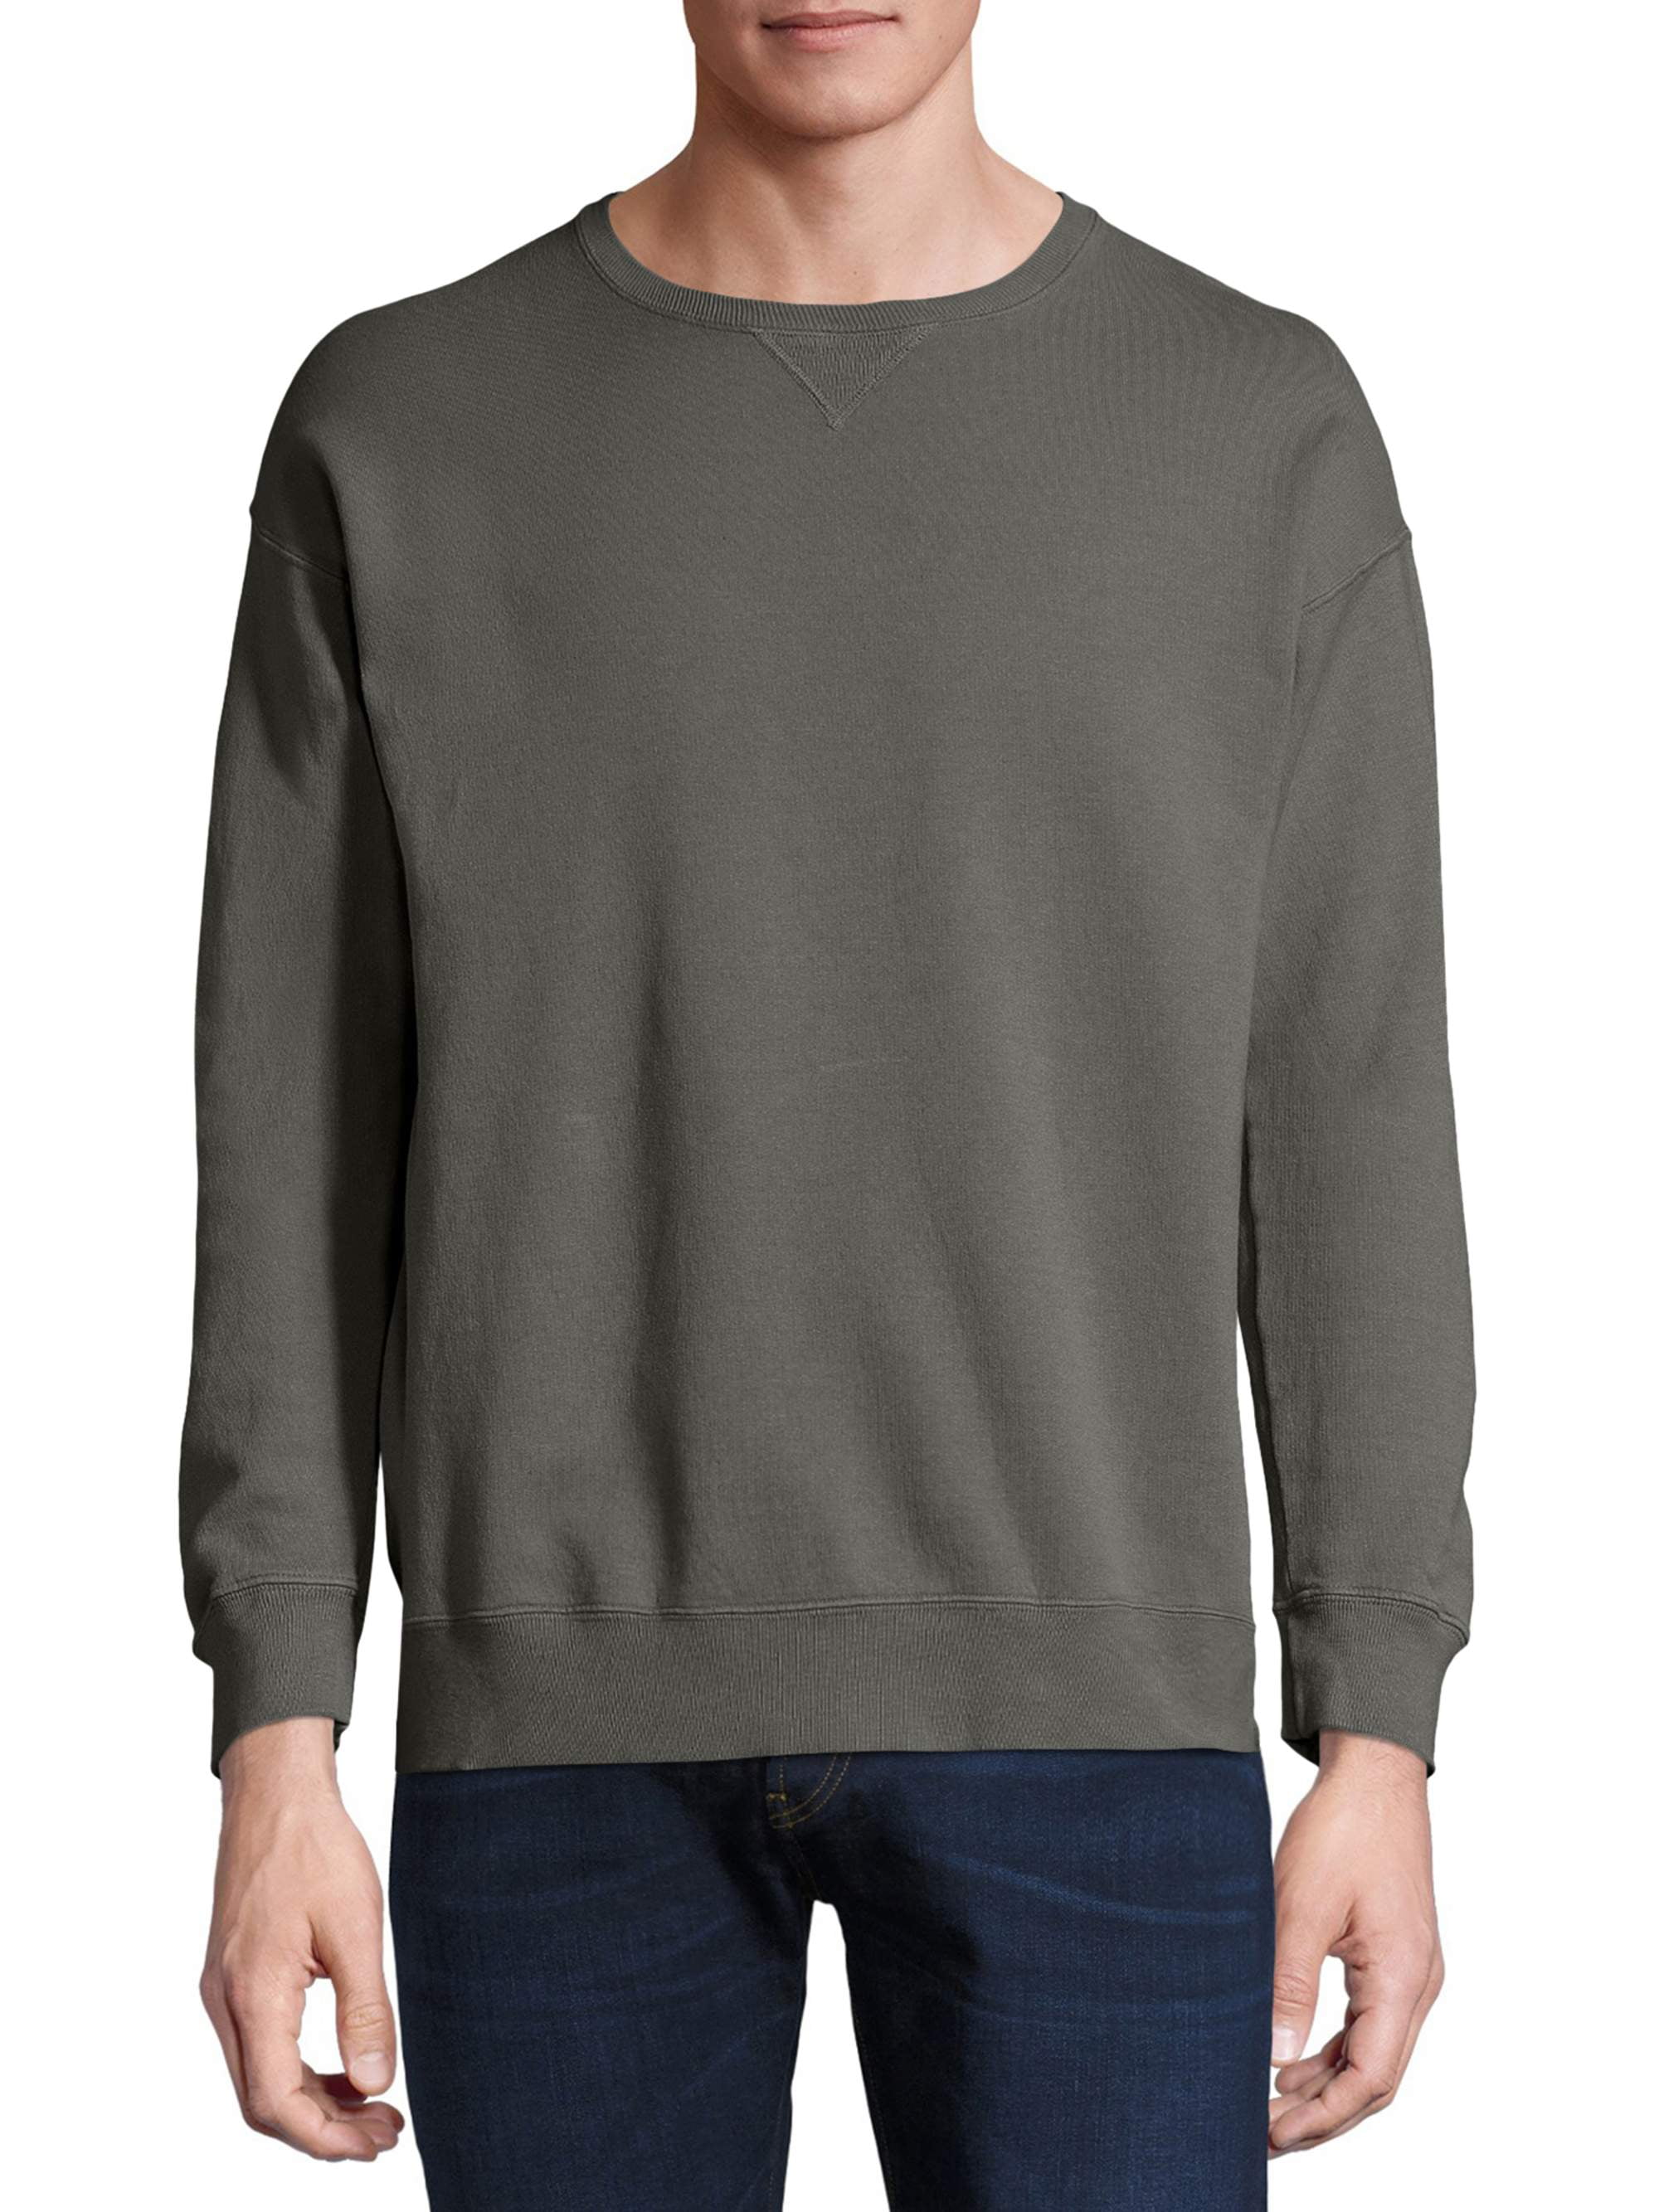 ComfortWash - Men's ComfortWash Garment Dyed Fleece Sweatshirt ...